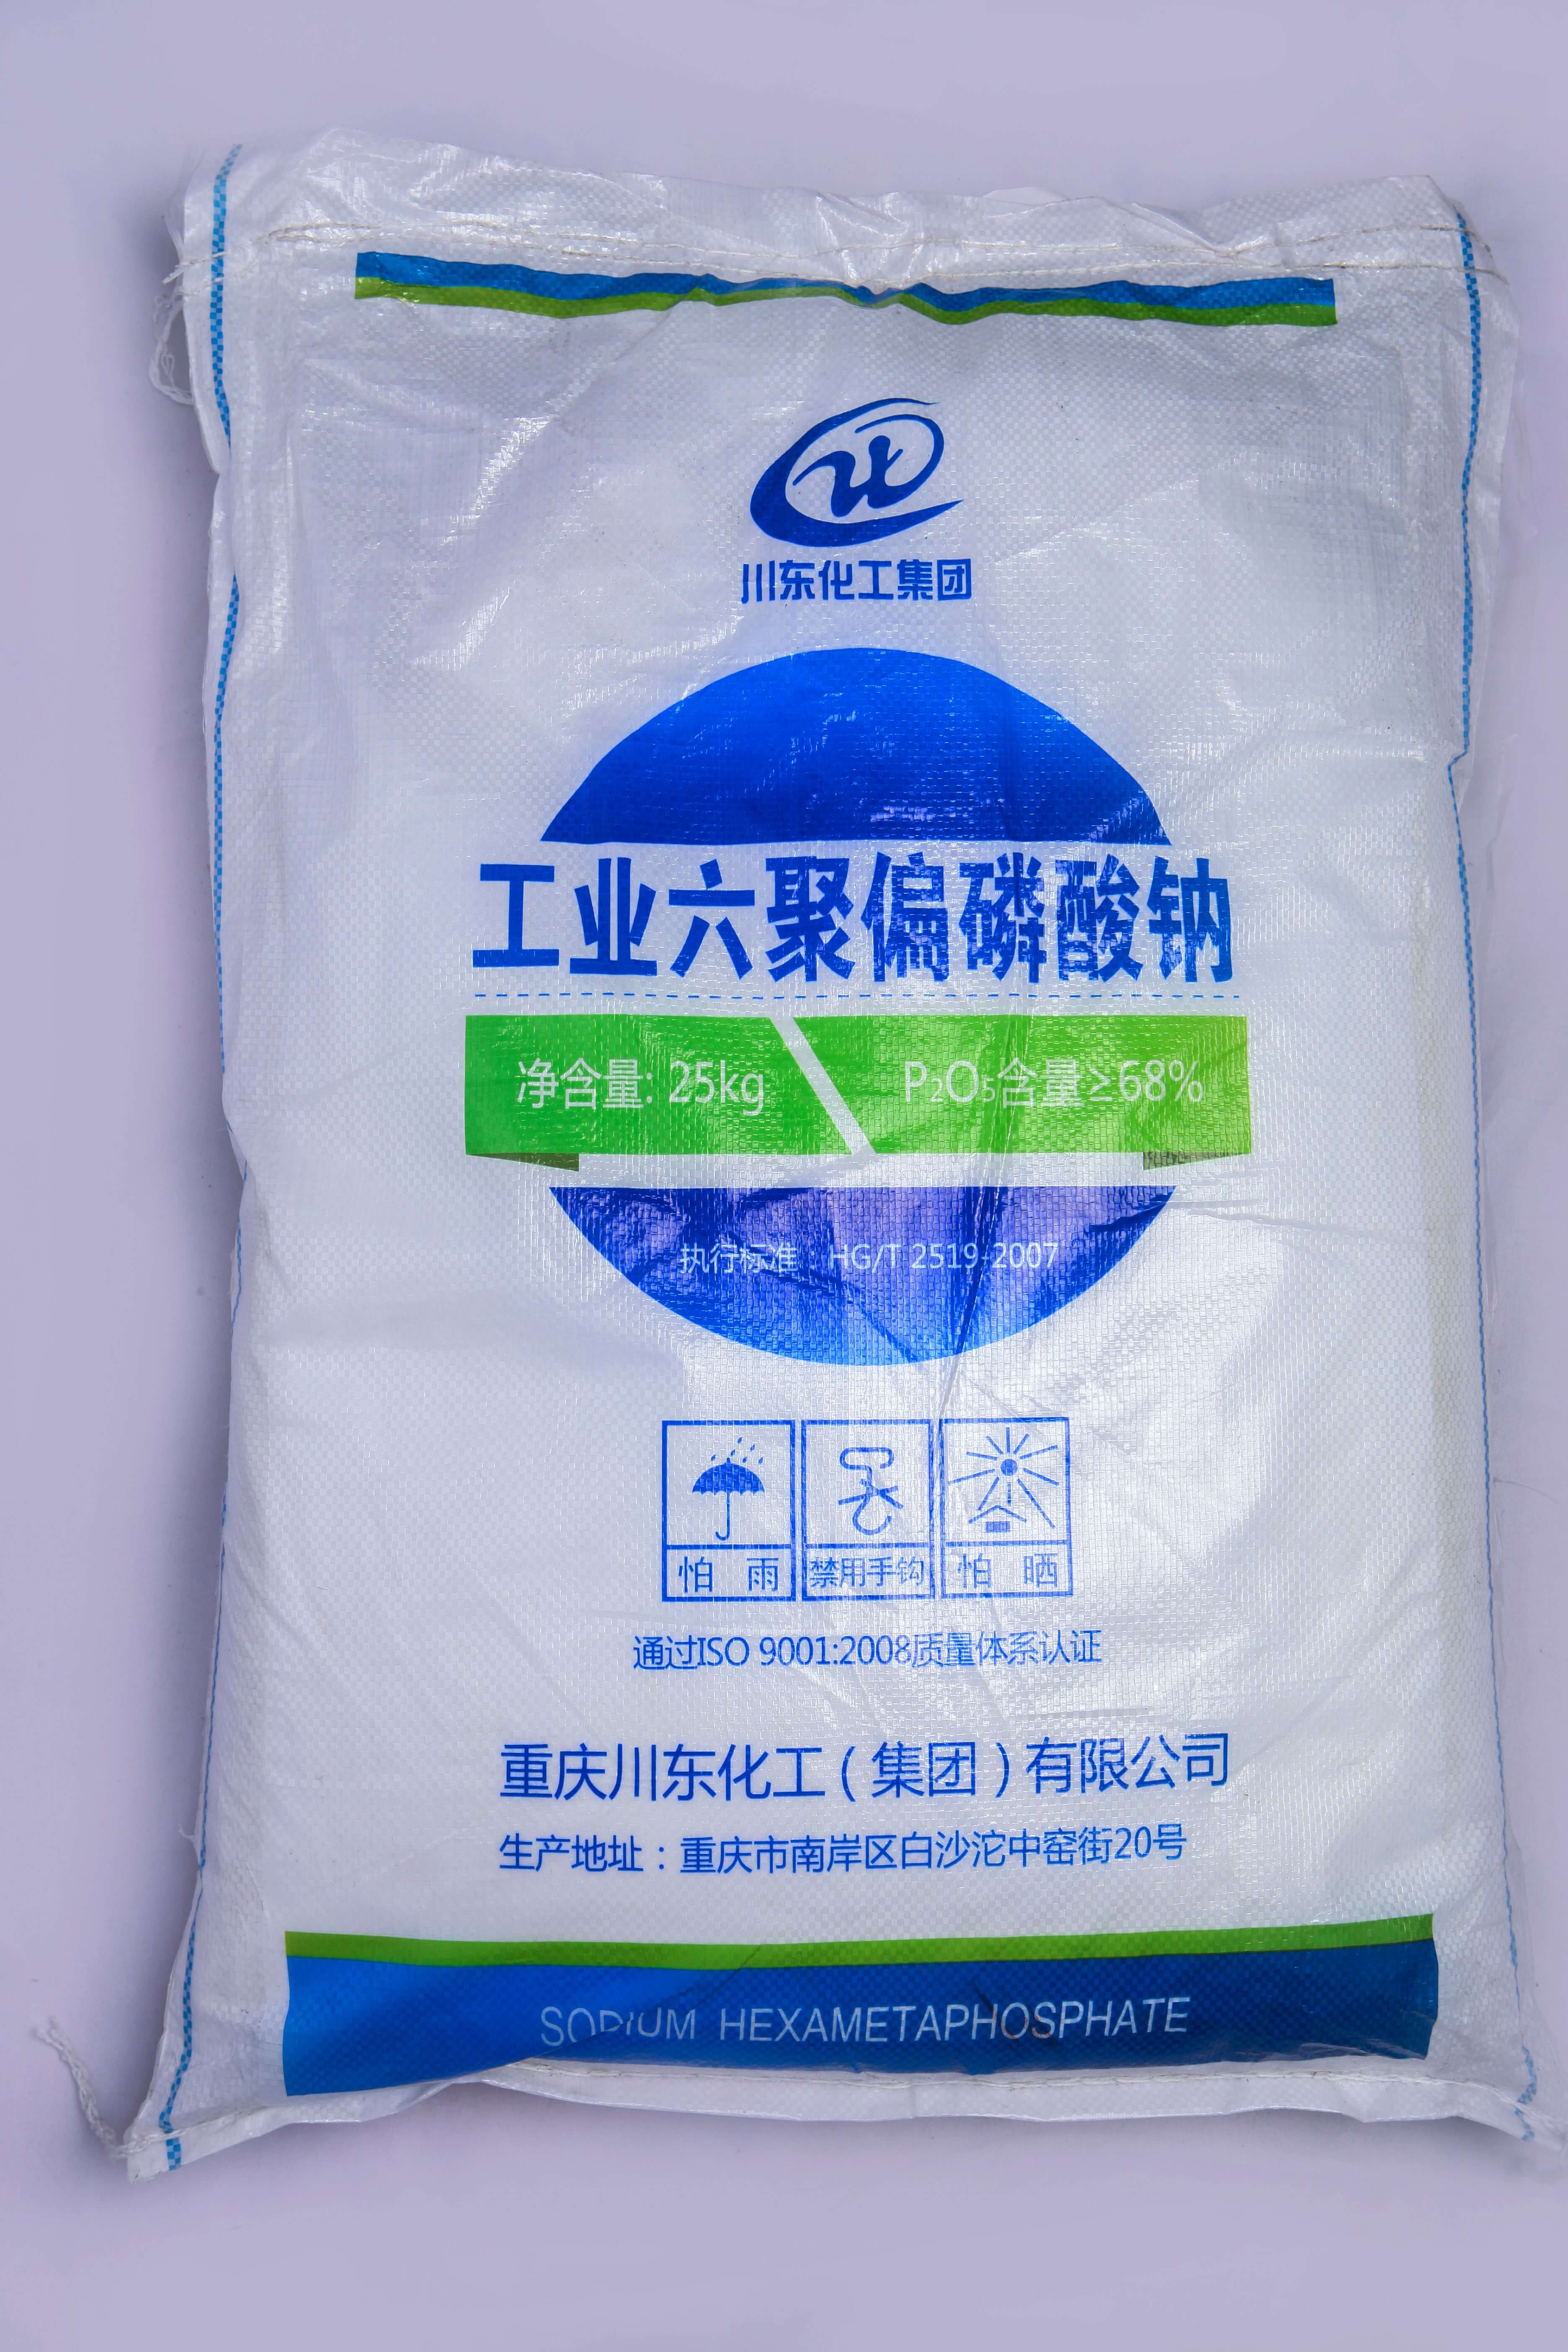 佛山三聚磷酸鈉代理商認為黃磷價格的持續上漲，主要受幾個方面的因素影響